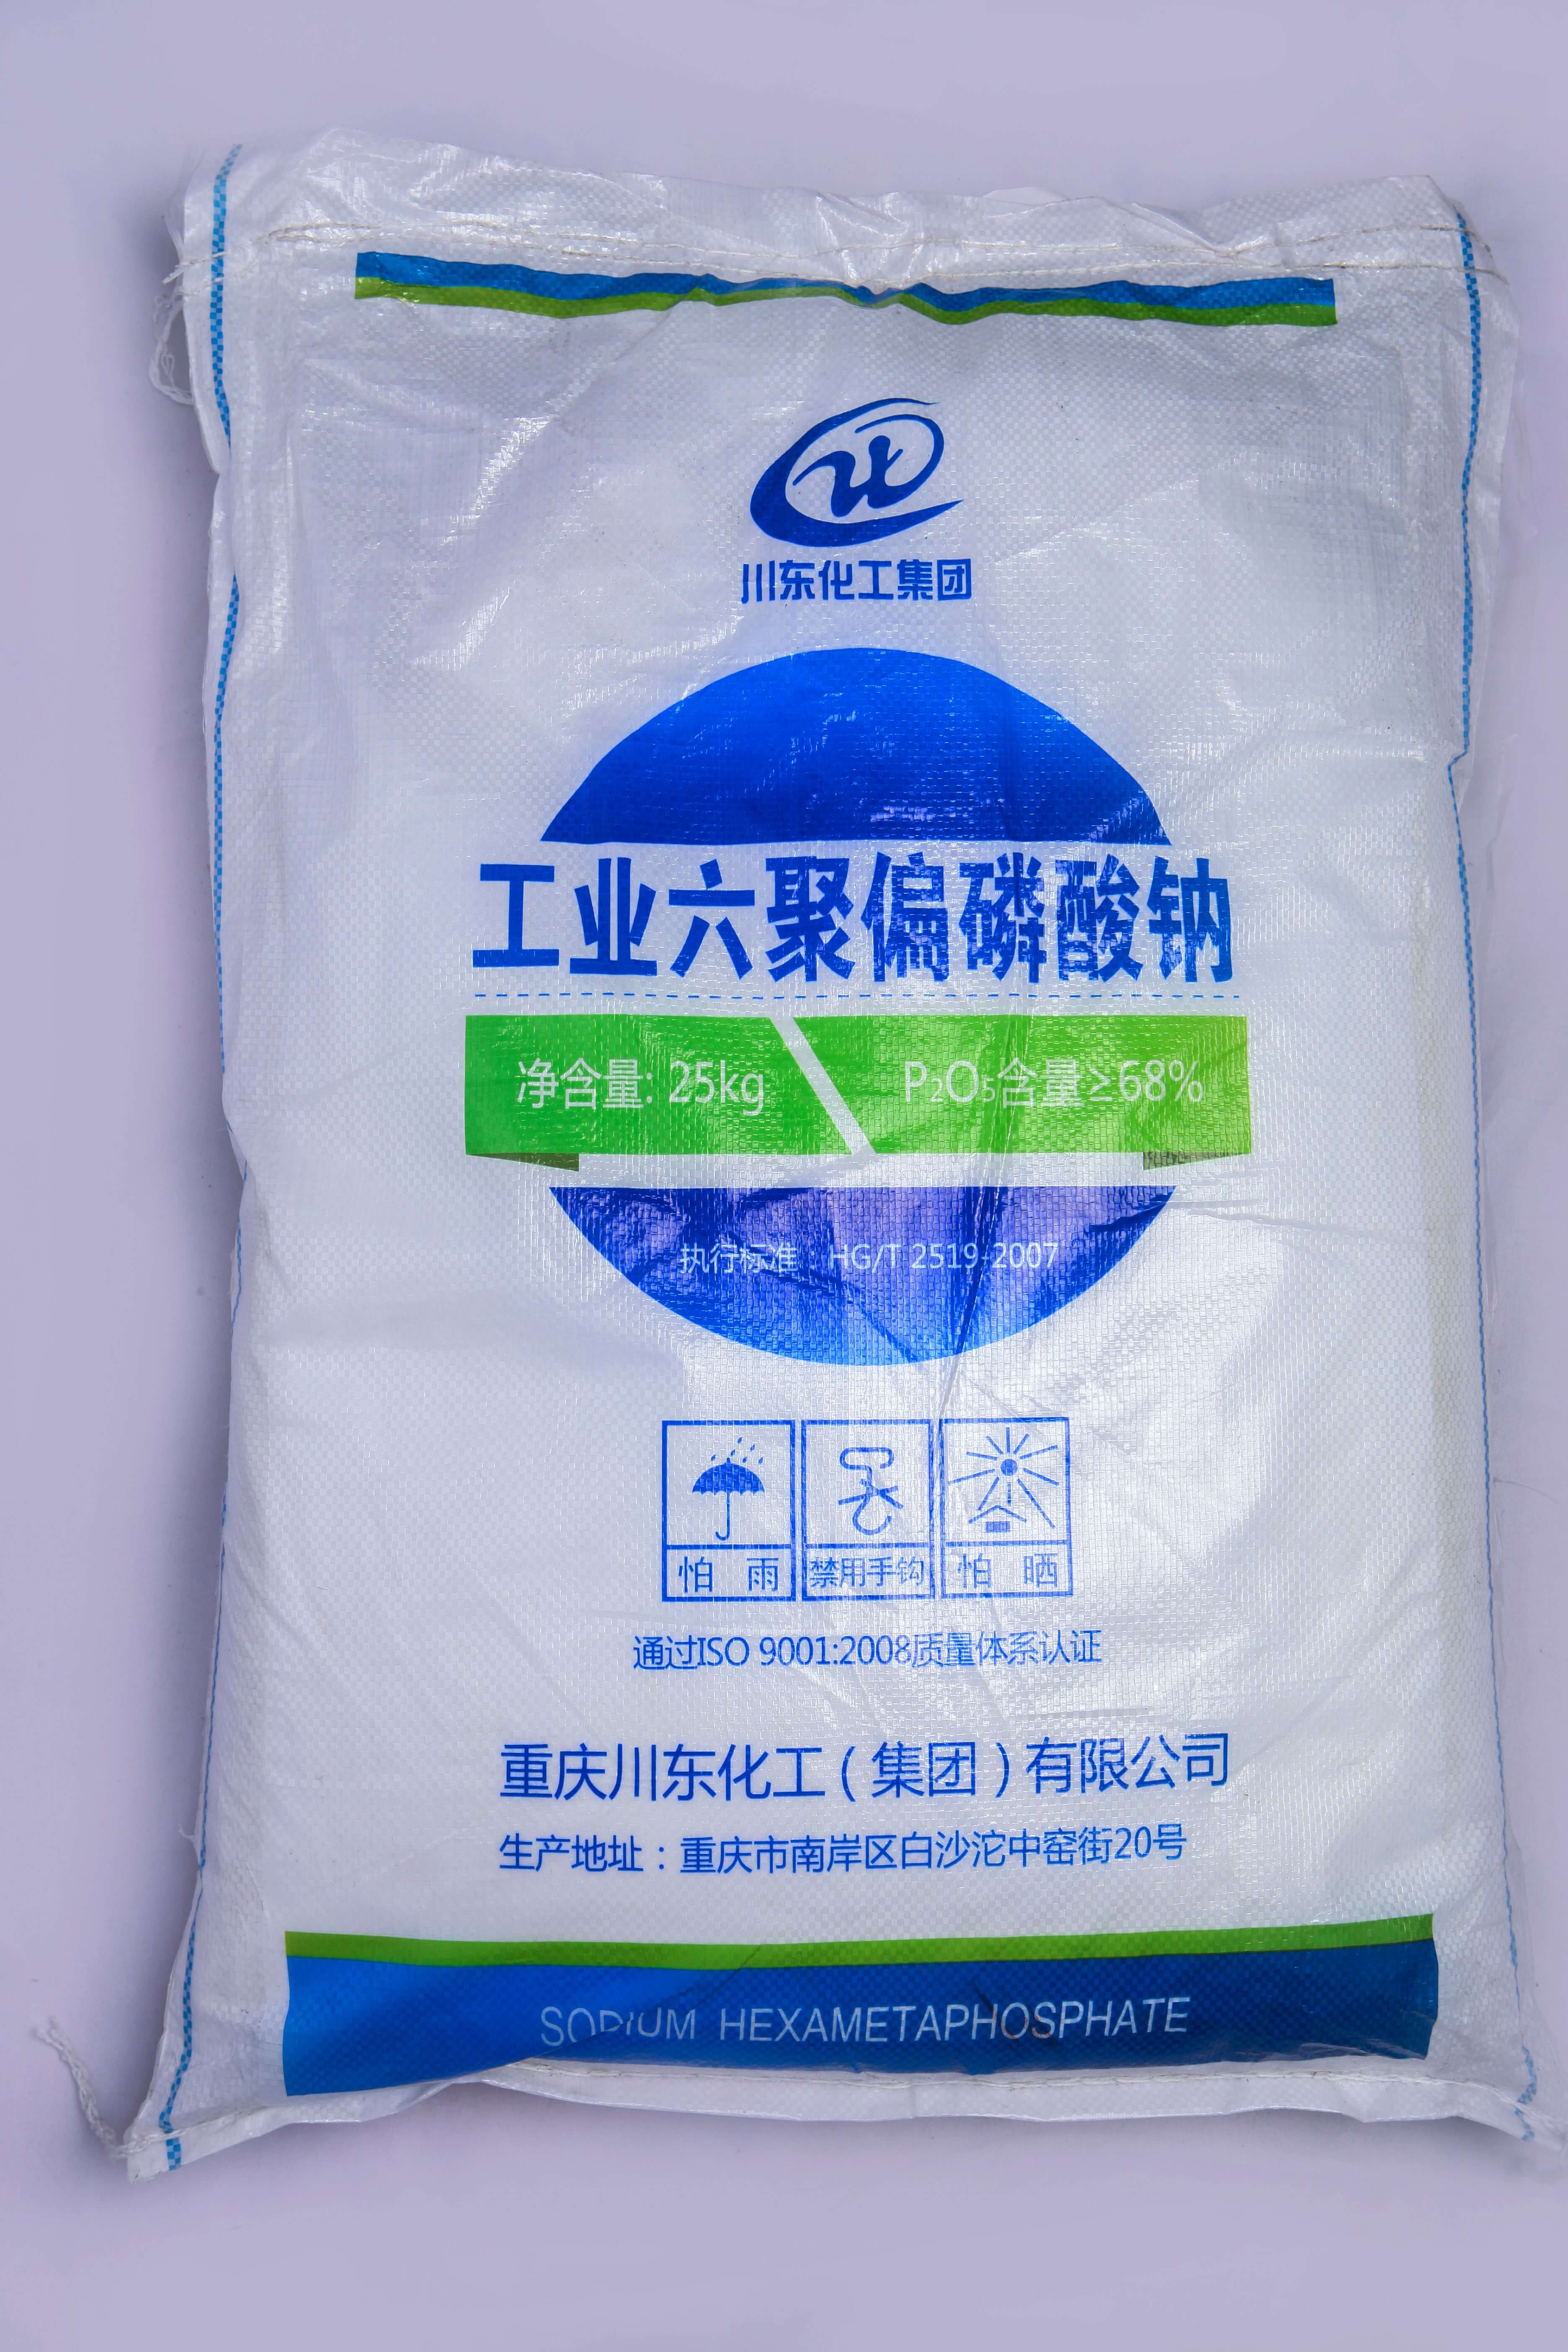 佛山三聚磷酸鈉代理商認為黃磷價格的持續上漲，主要受幾個方面的因素影響